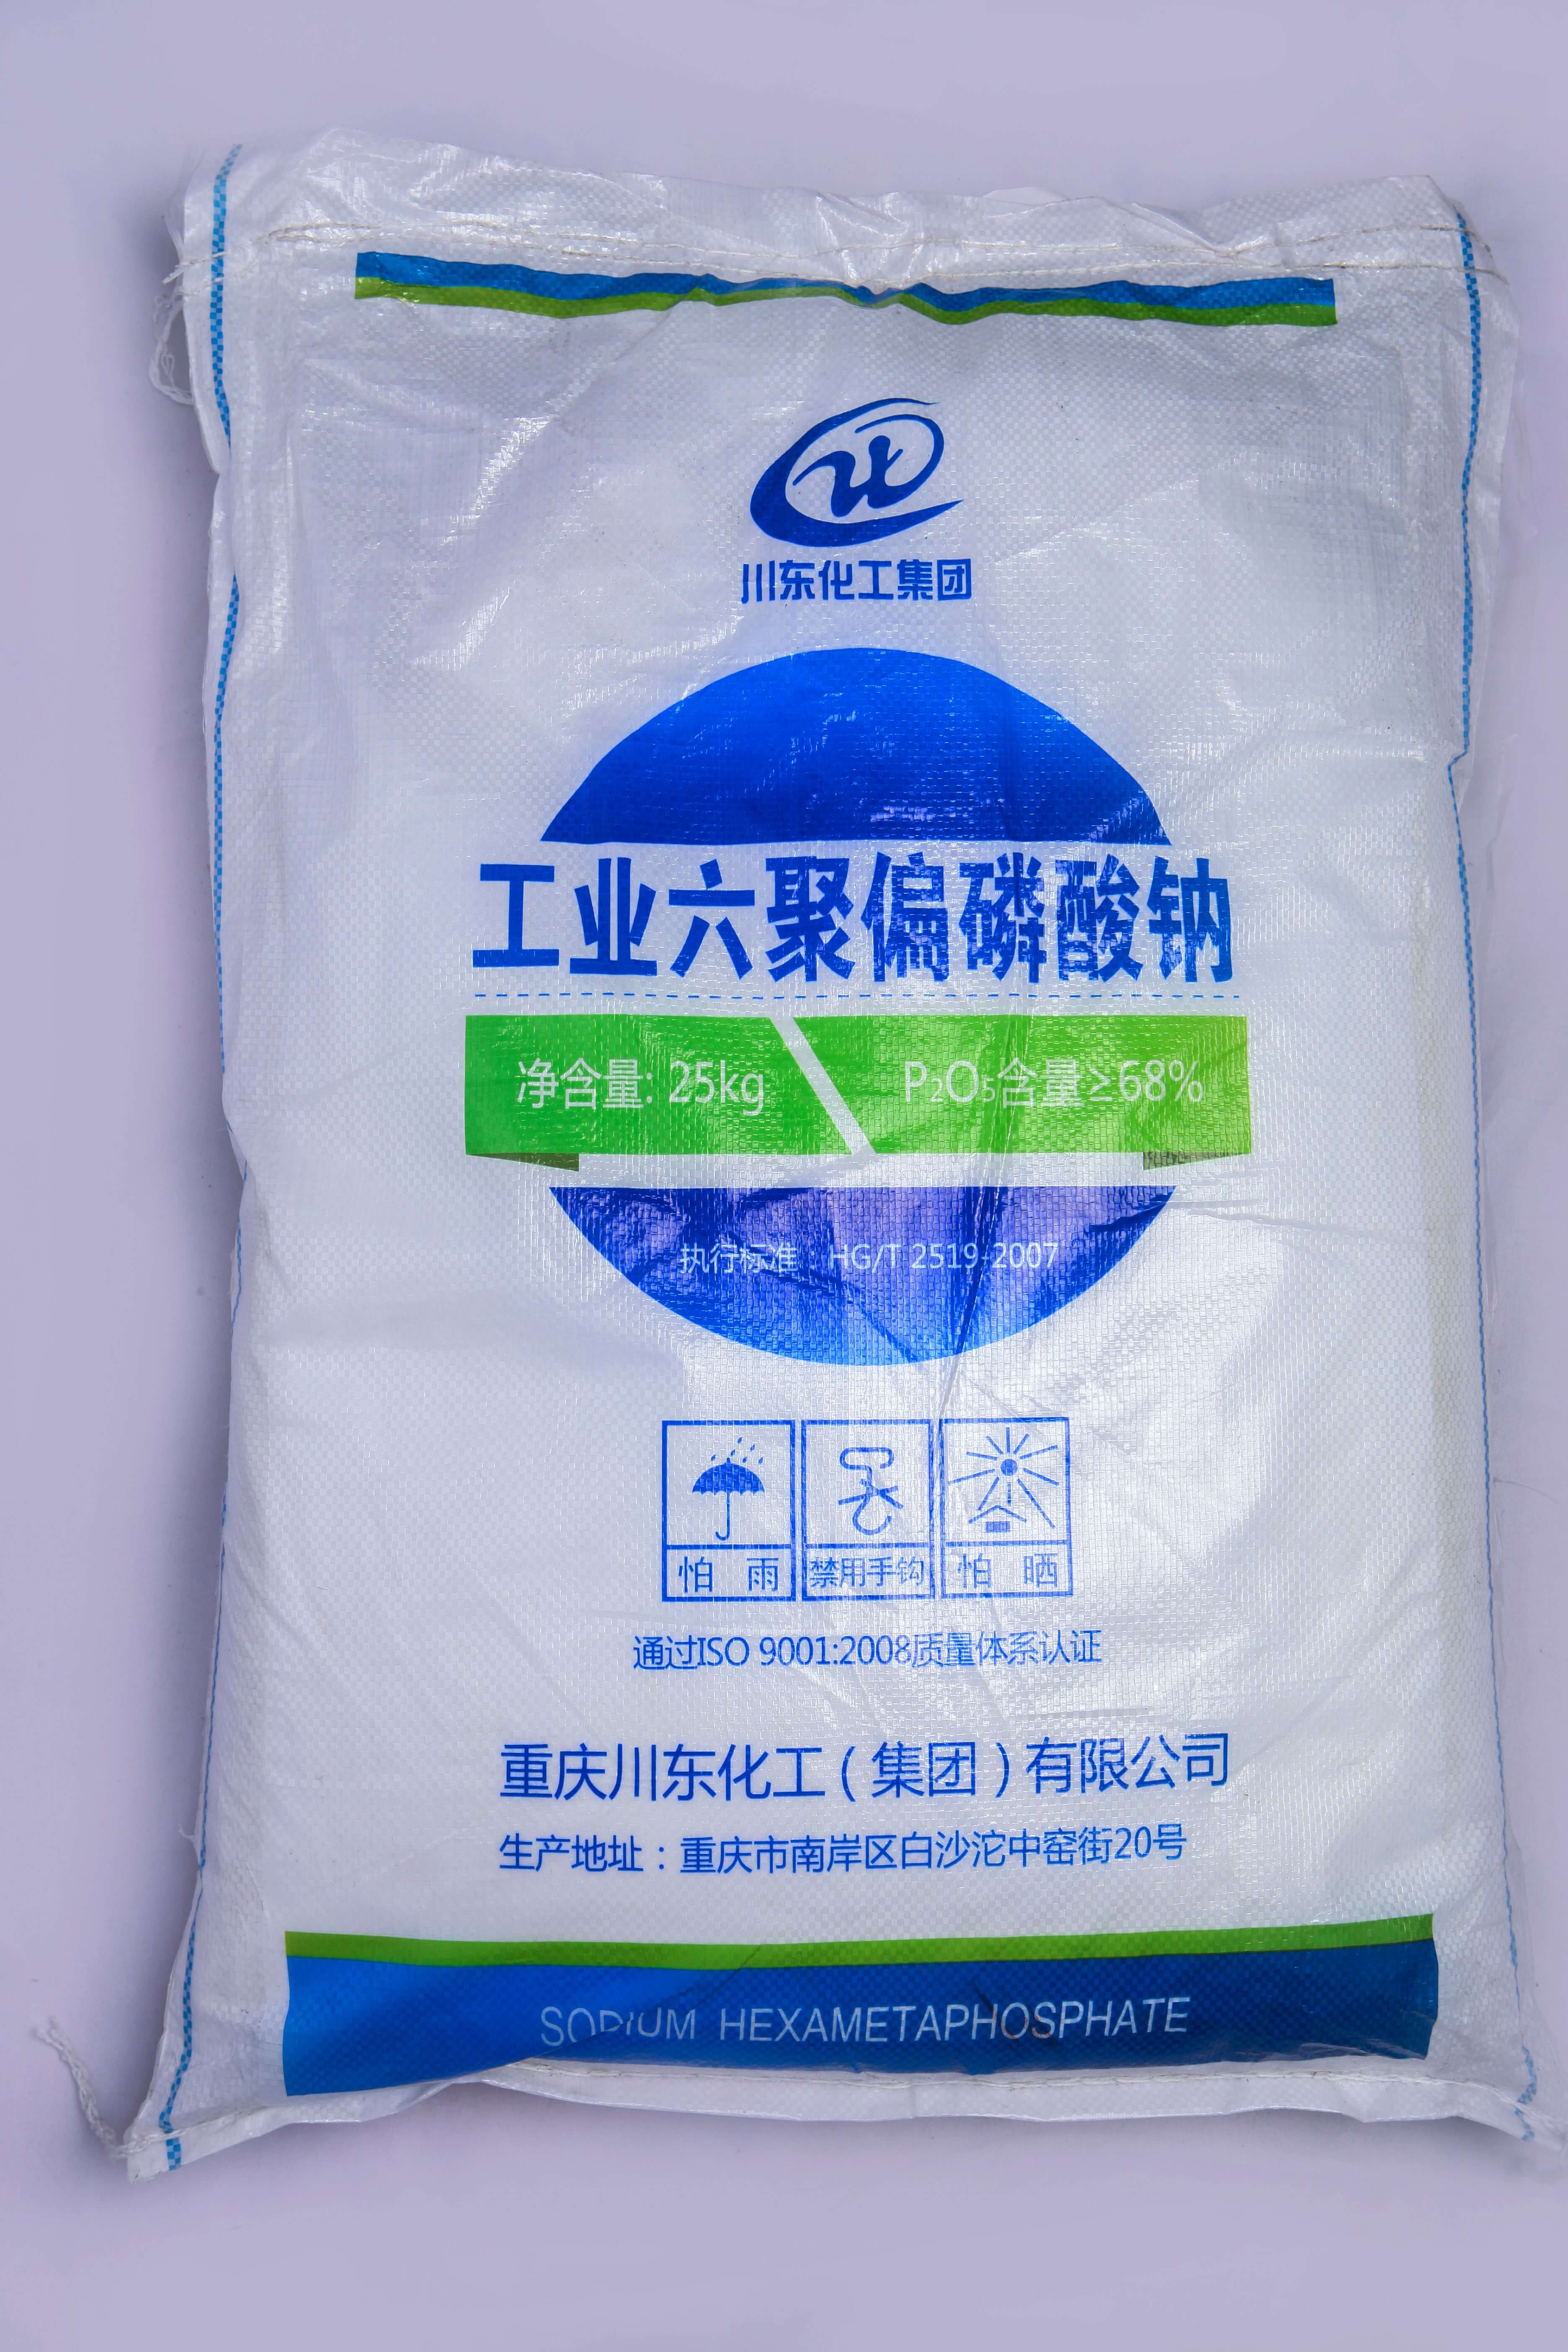 佛山三聚磷酸鈉代理商認為黃磷價格的持續上漲，主要受幾個方面的因素影響